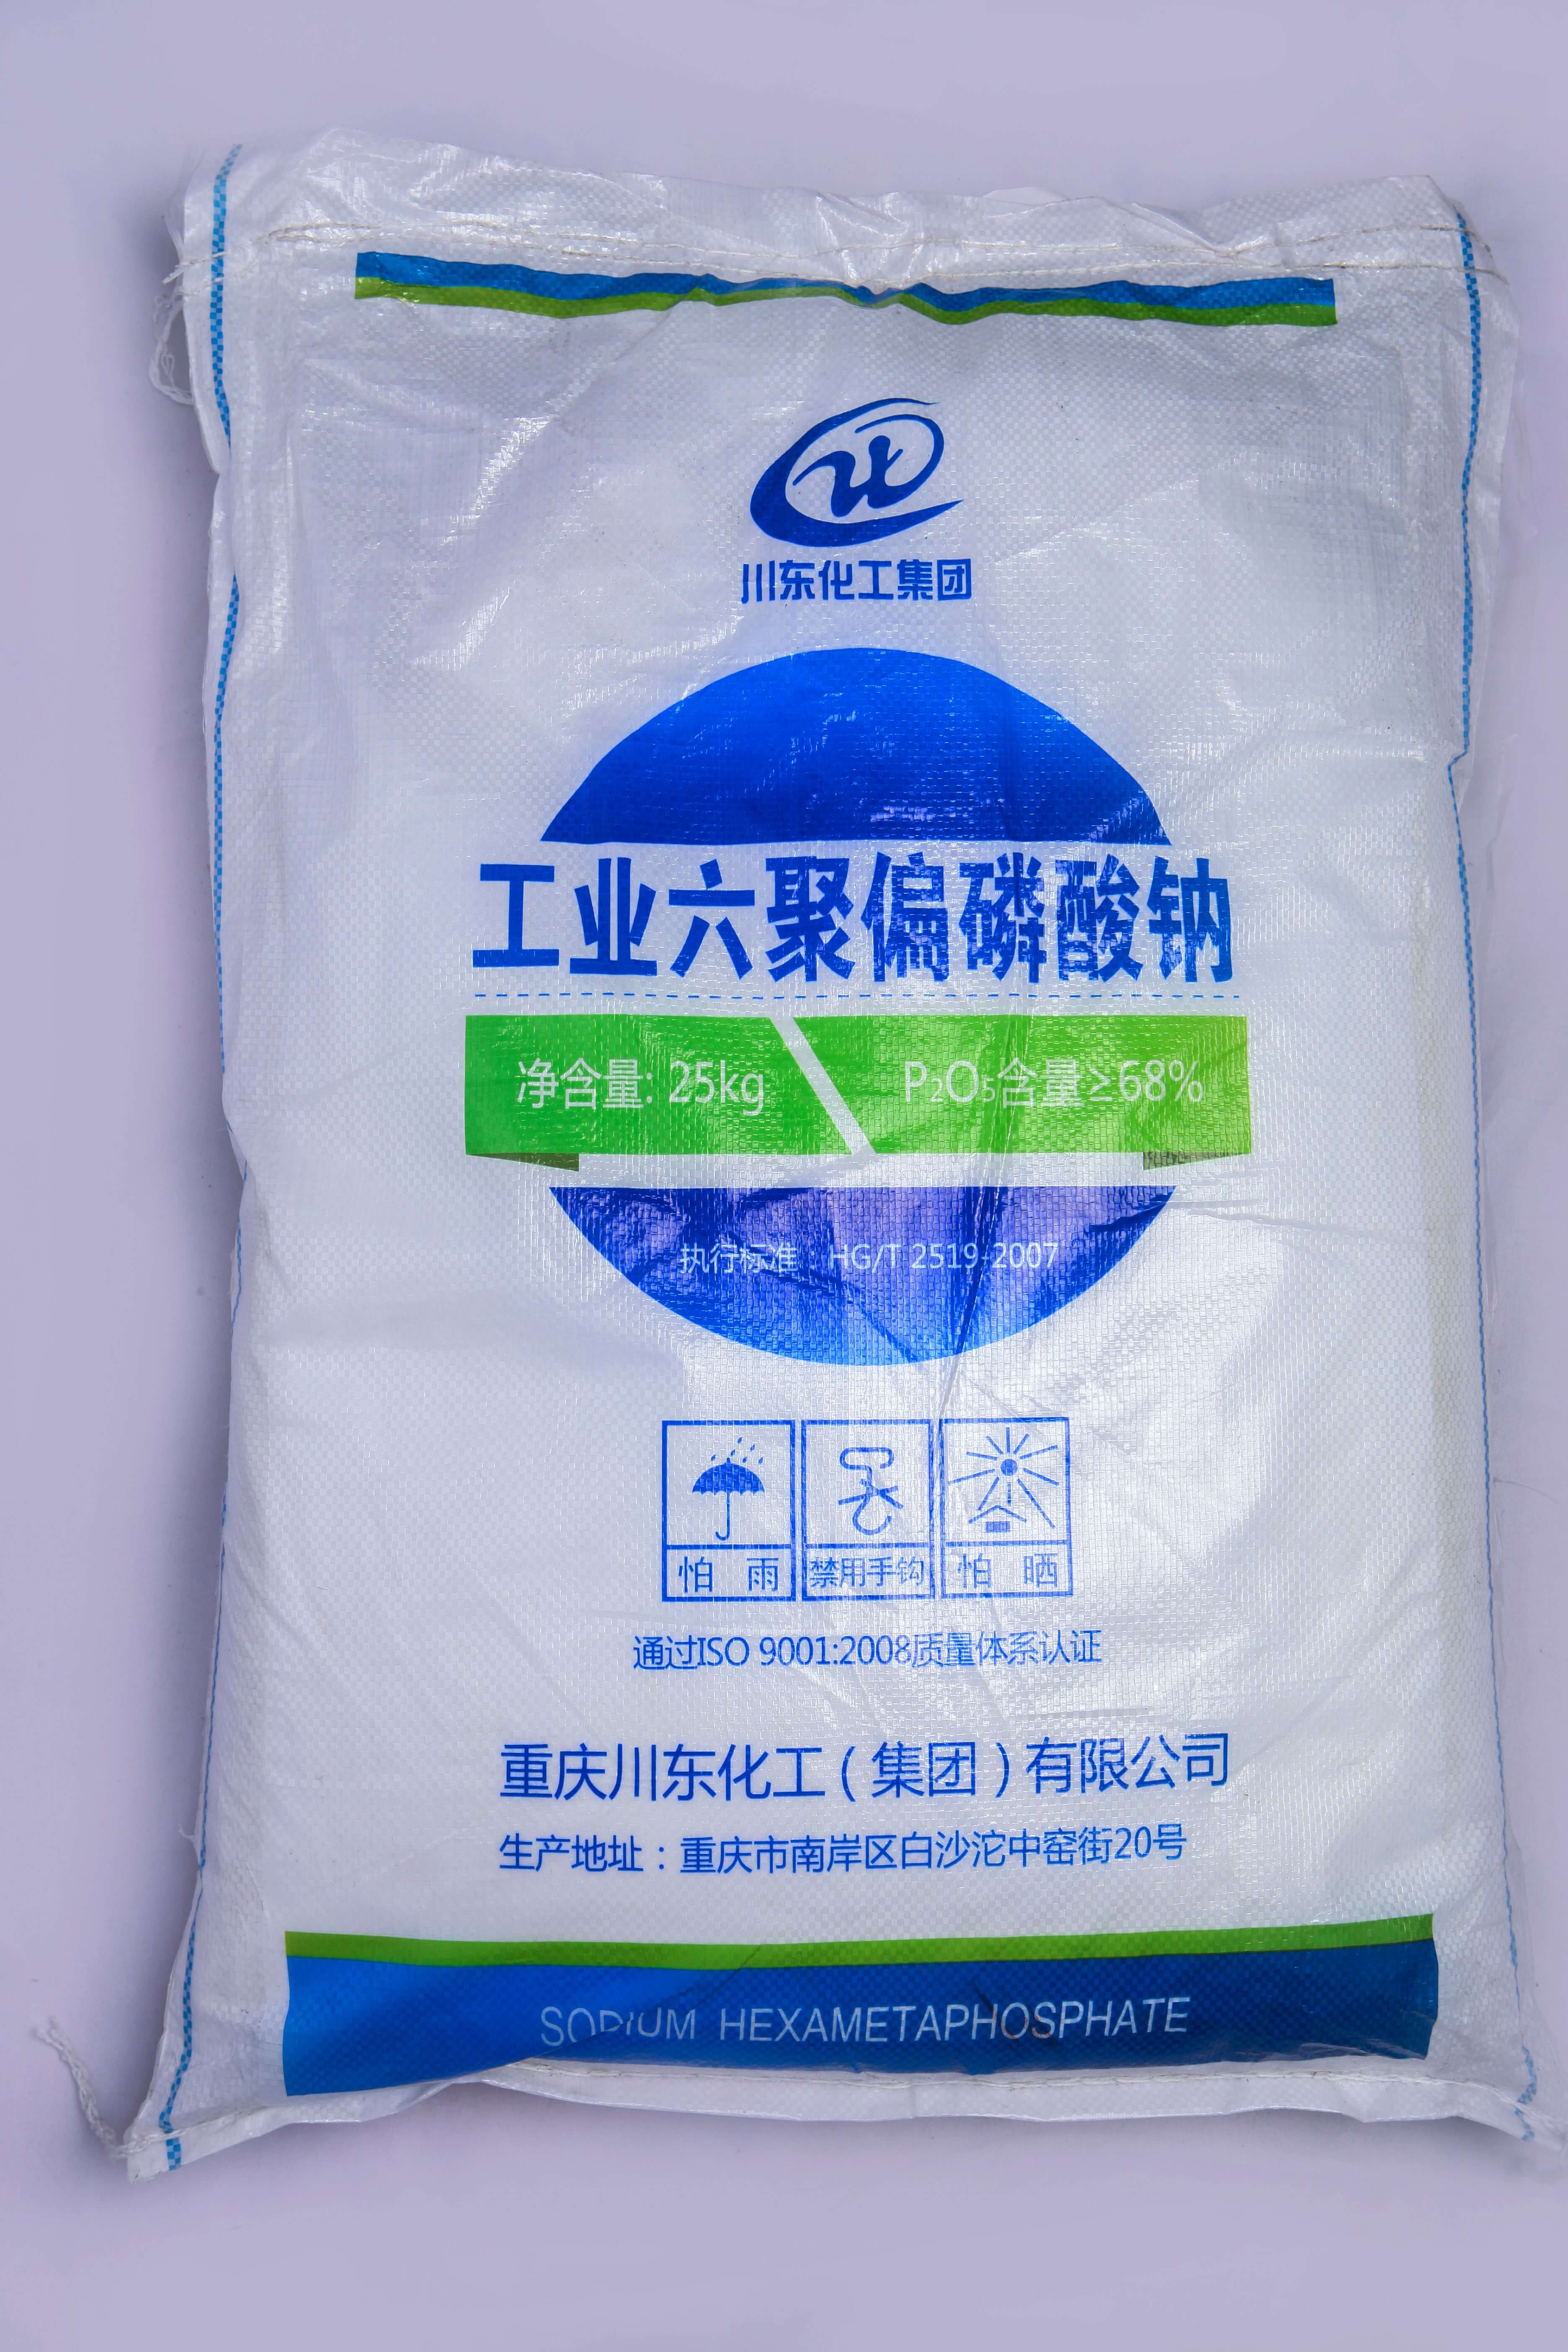 佛山三聚磷酸鈉代理商認為黃磷價格的持續上漲，主要受幾個方面的因素影響